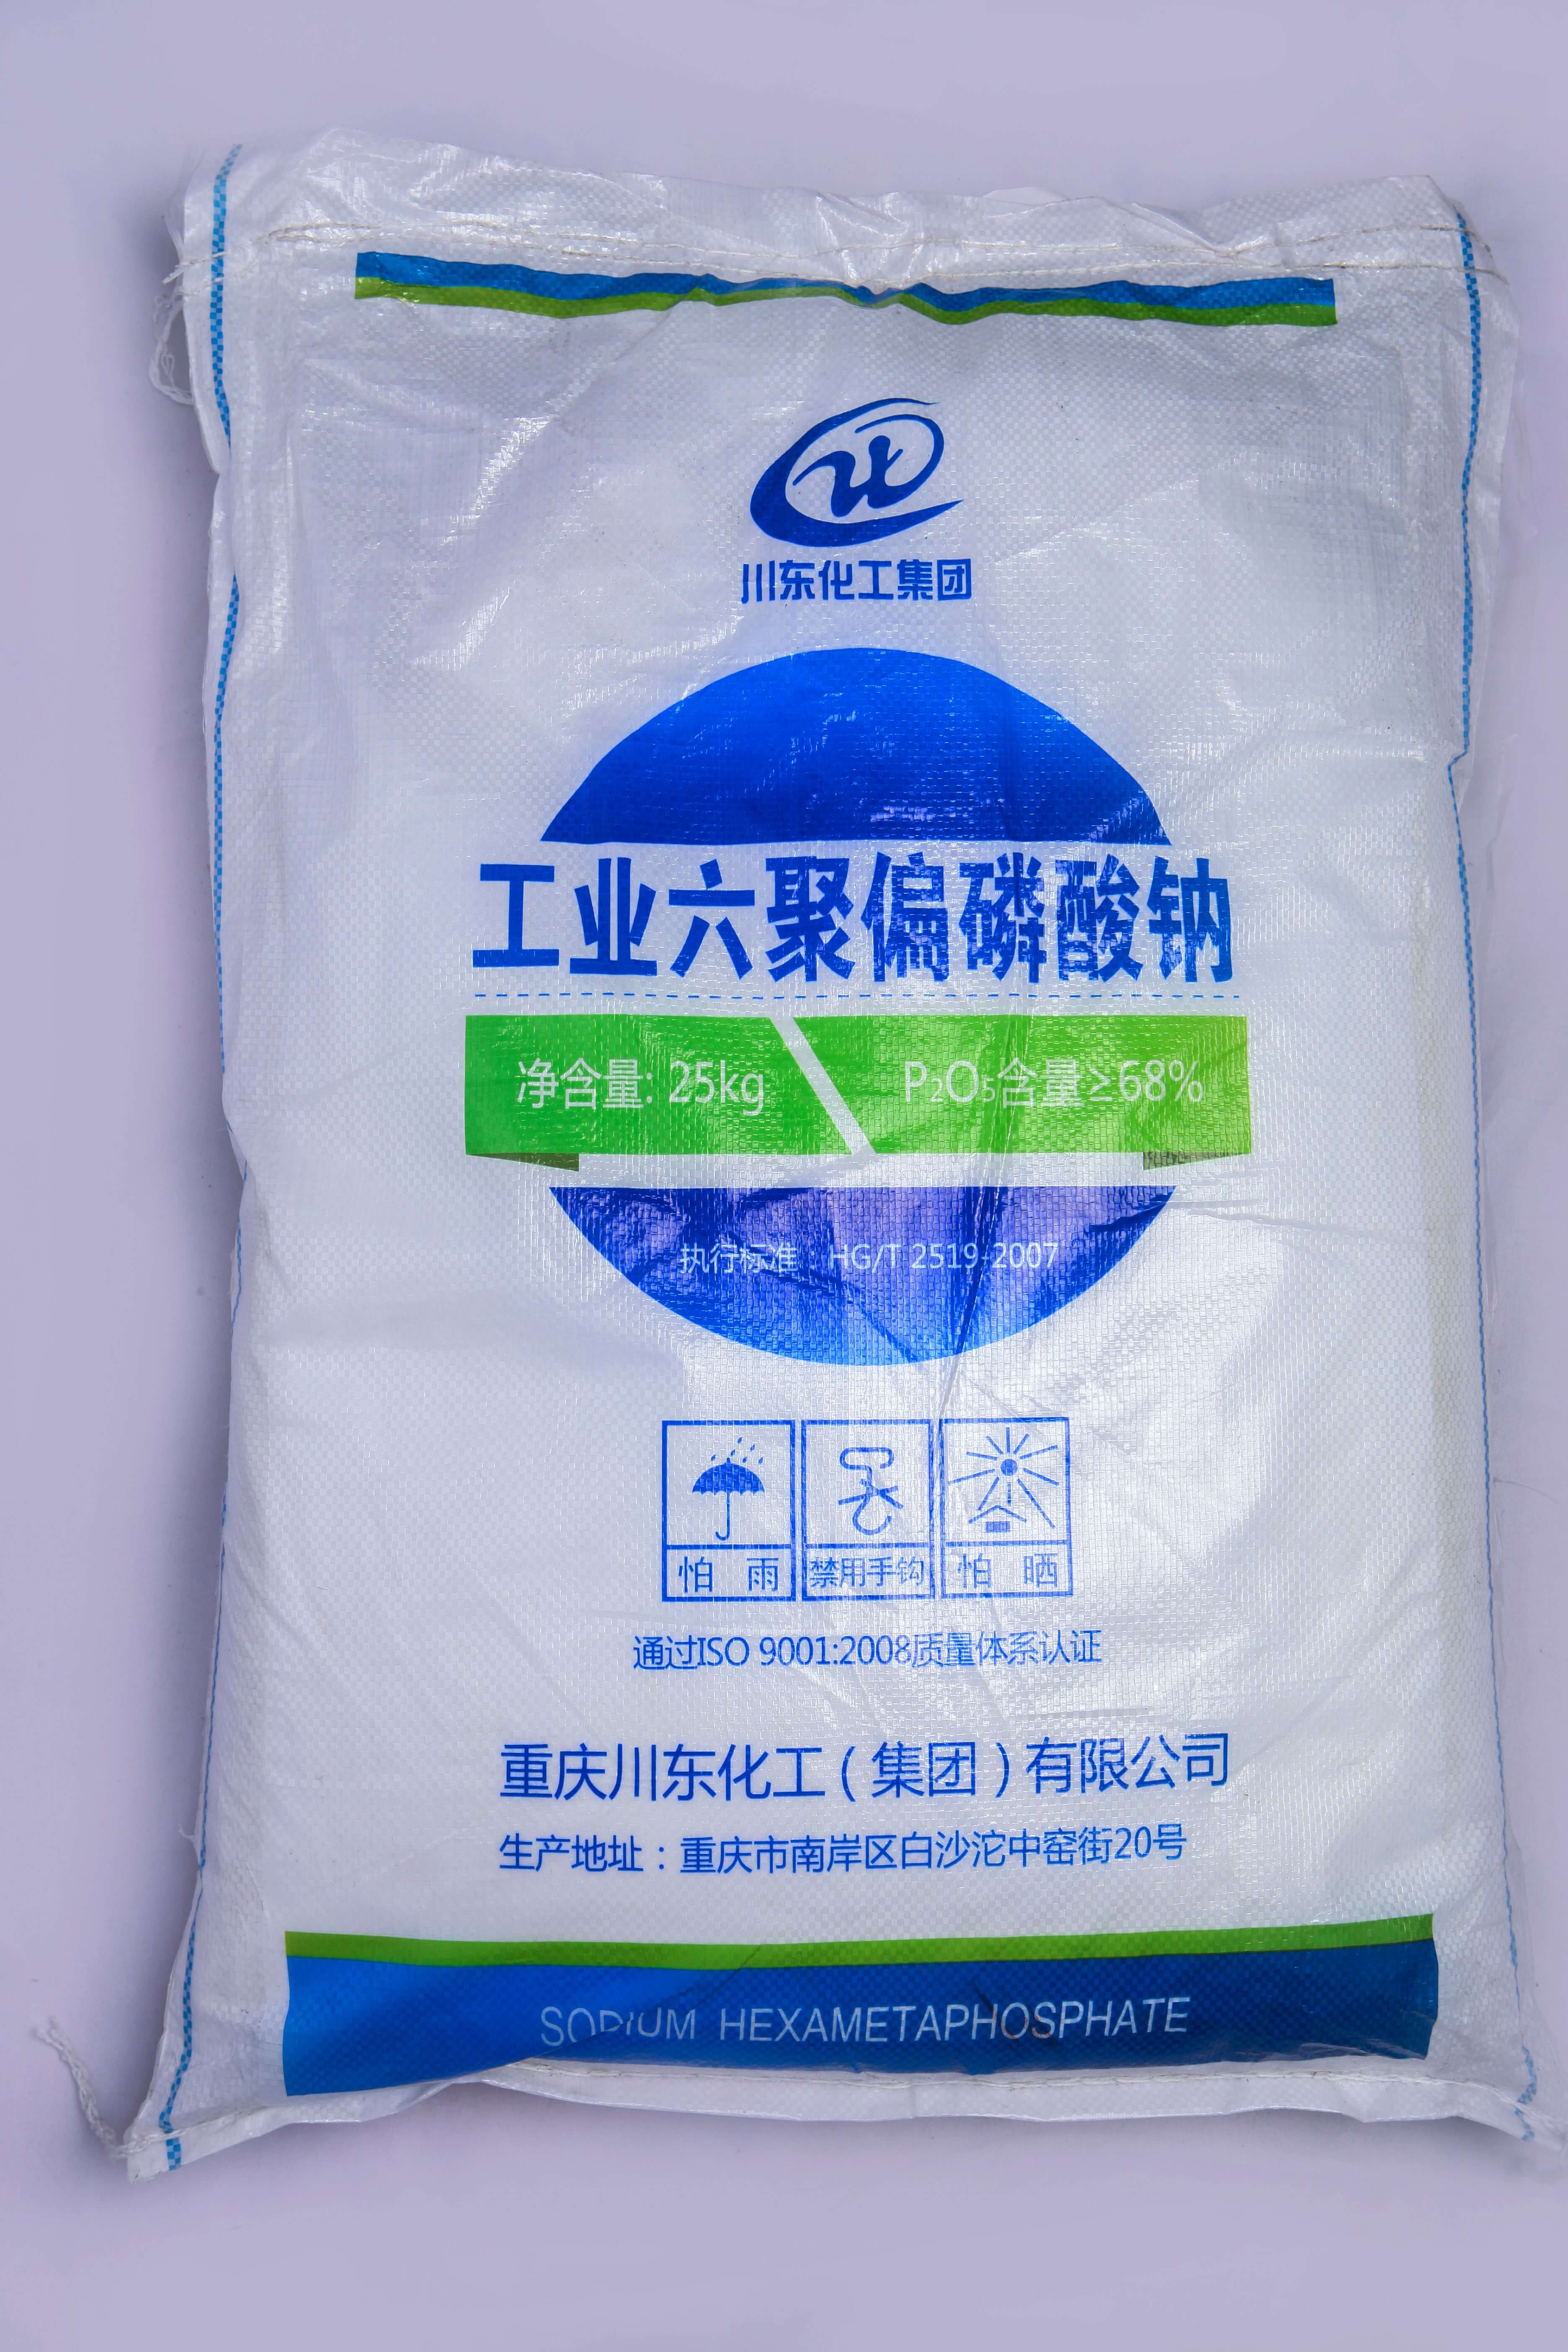 佛山三聚磷酸鈉代理商認為黃磷價格的持續上漲，主要受幾個方面的因素影響